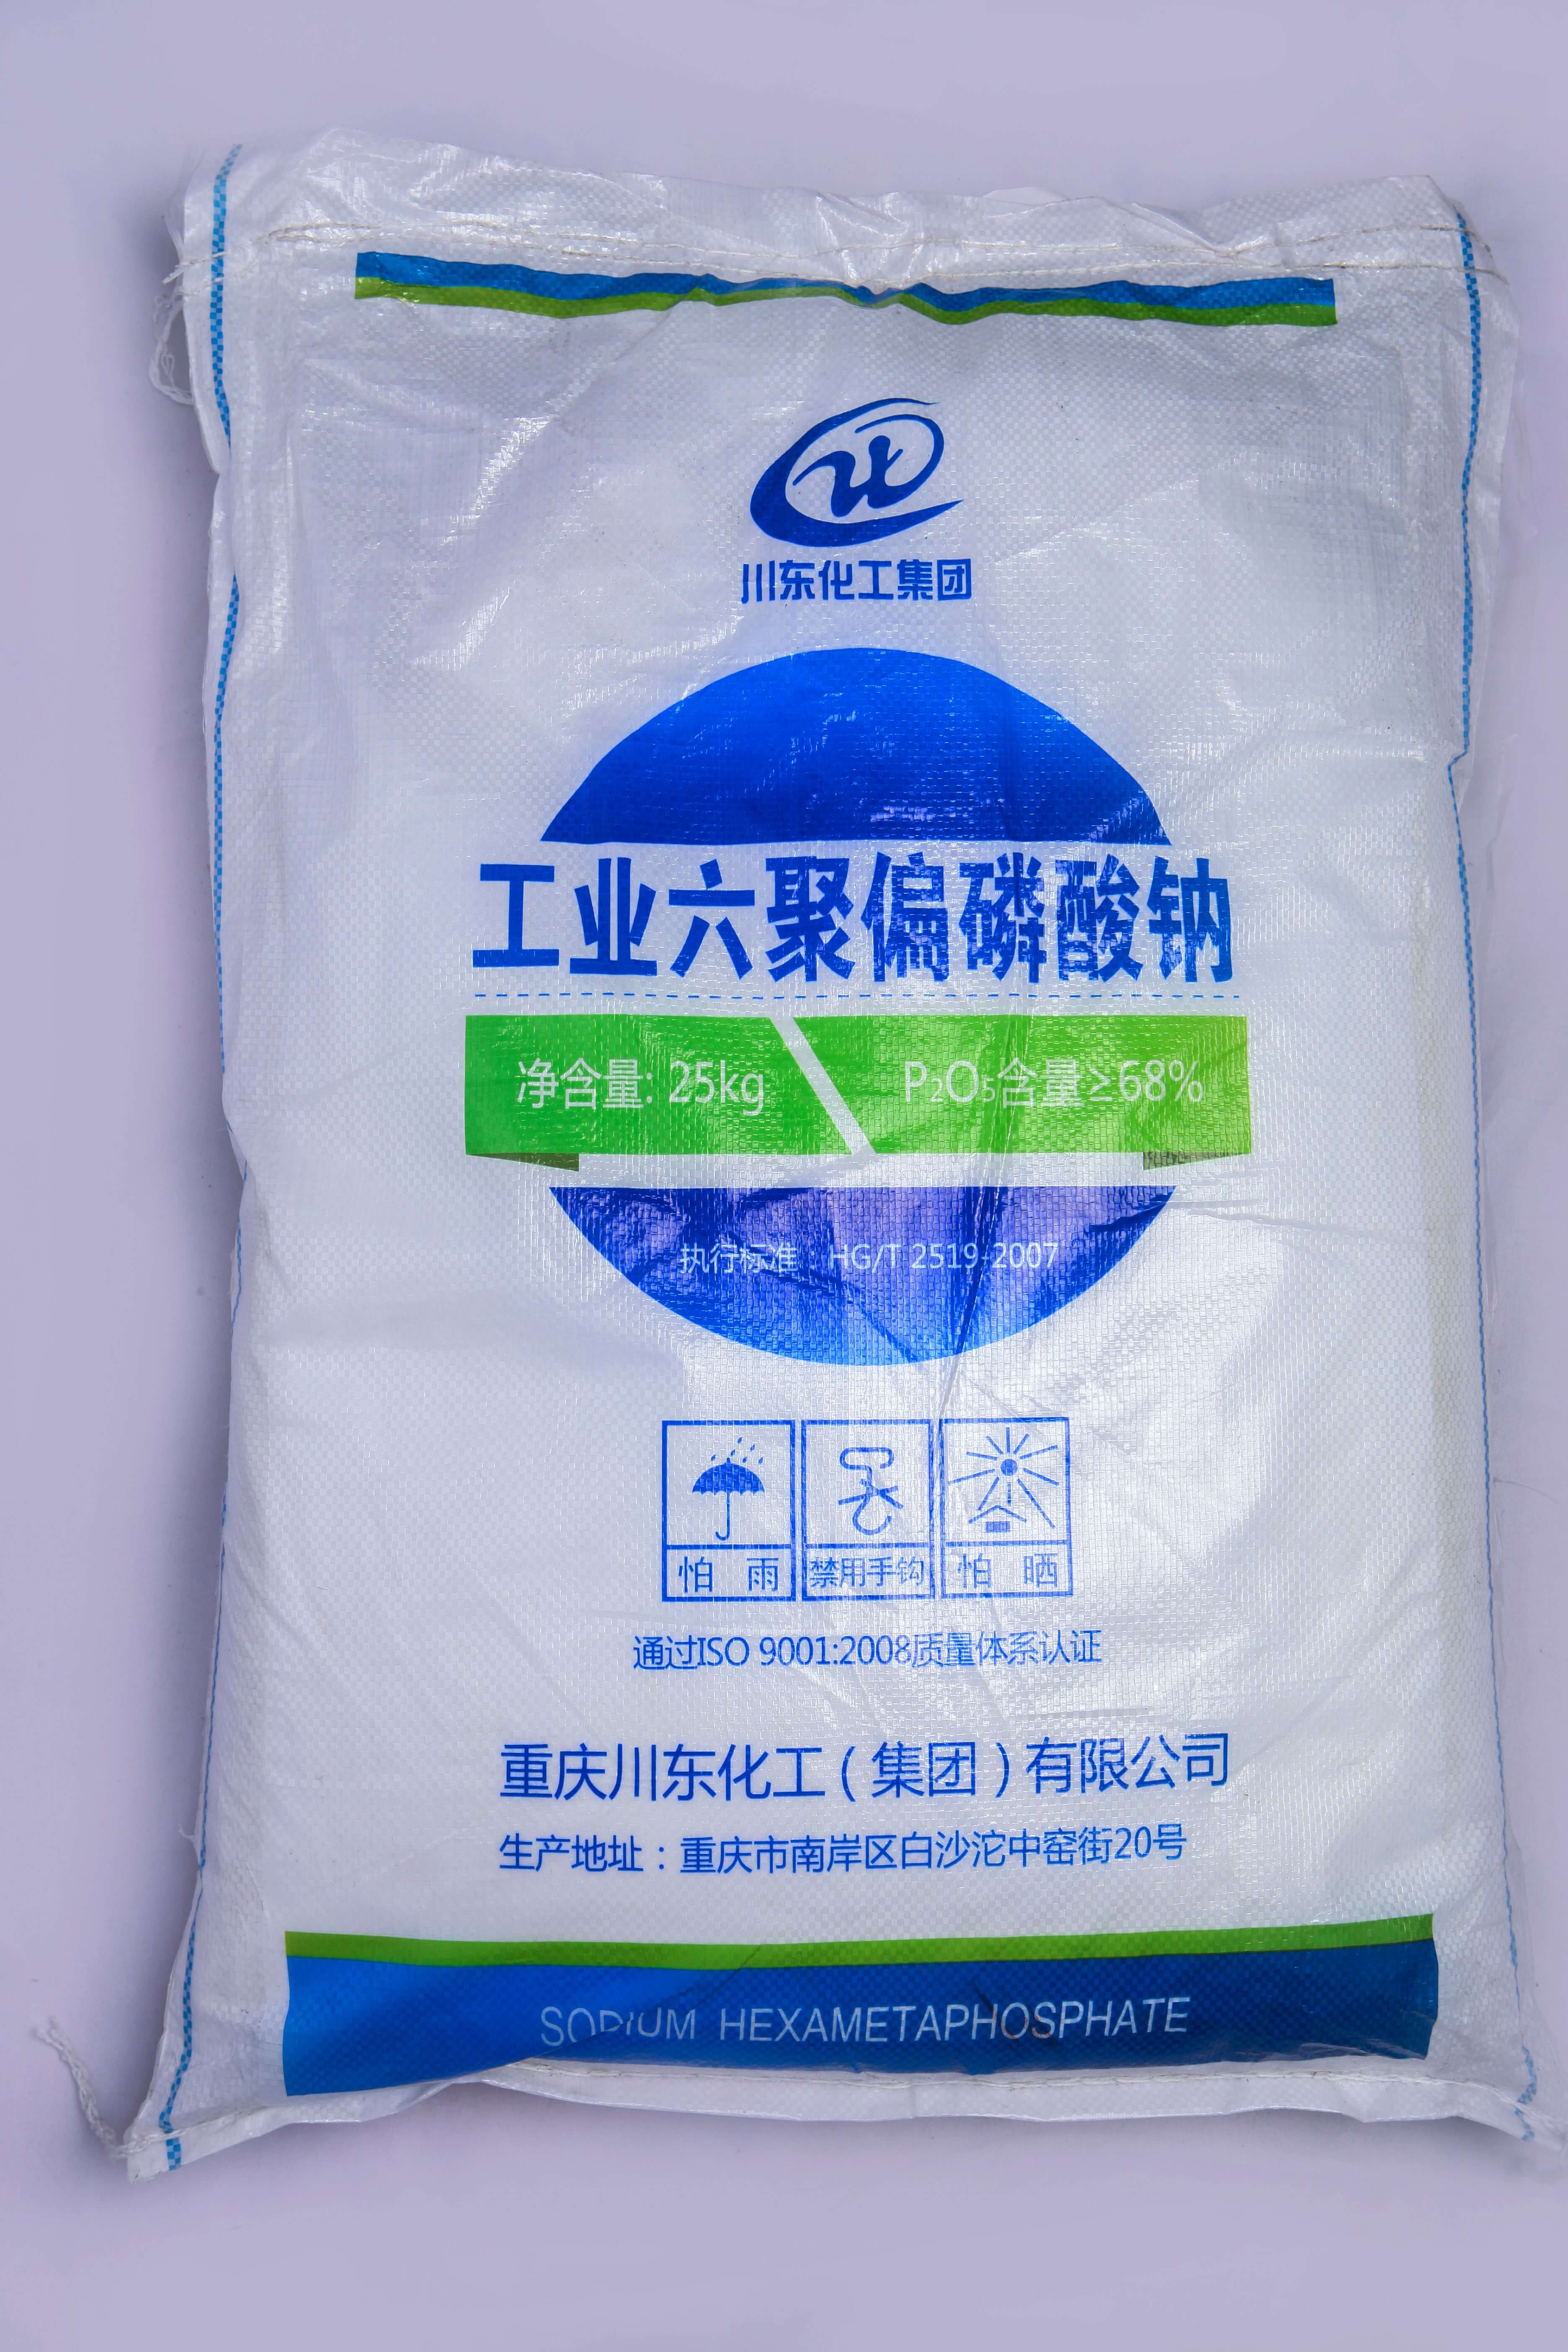 佛山三聚磷酸鈉代理商認為黃磷價格的持續上漲，主要受幾個方面的因素影響